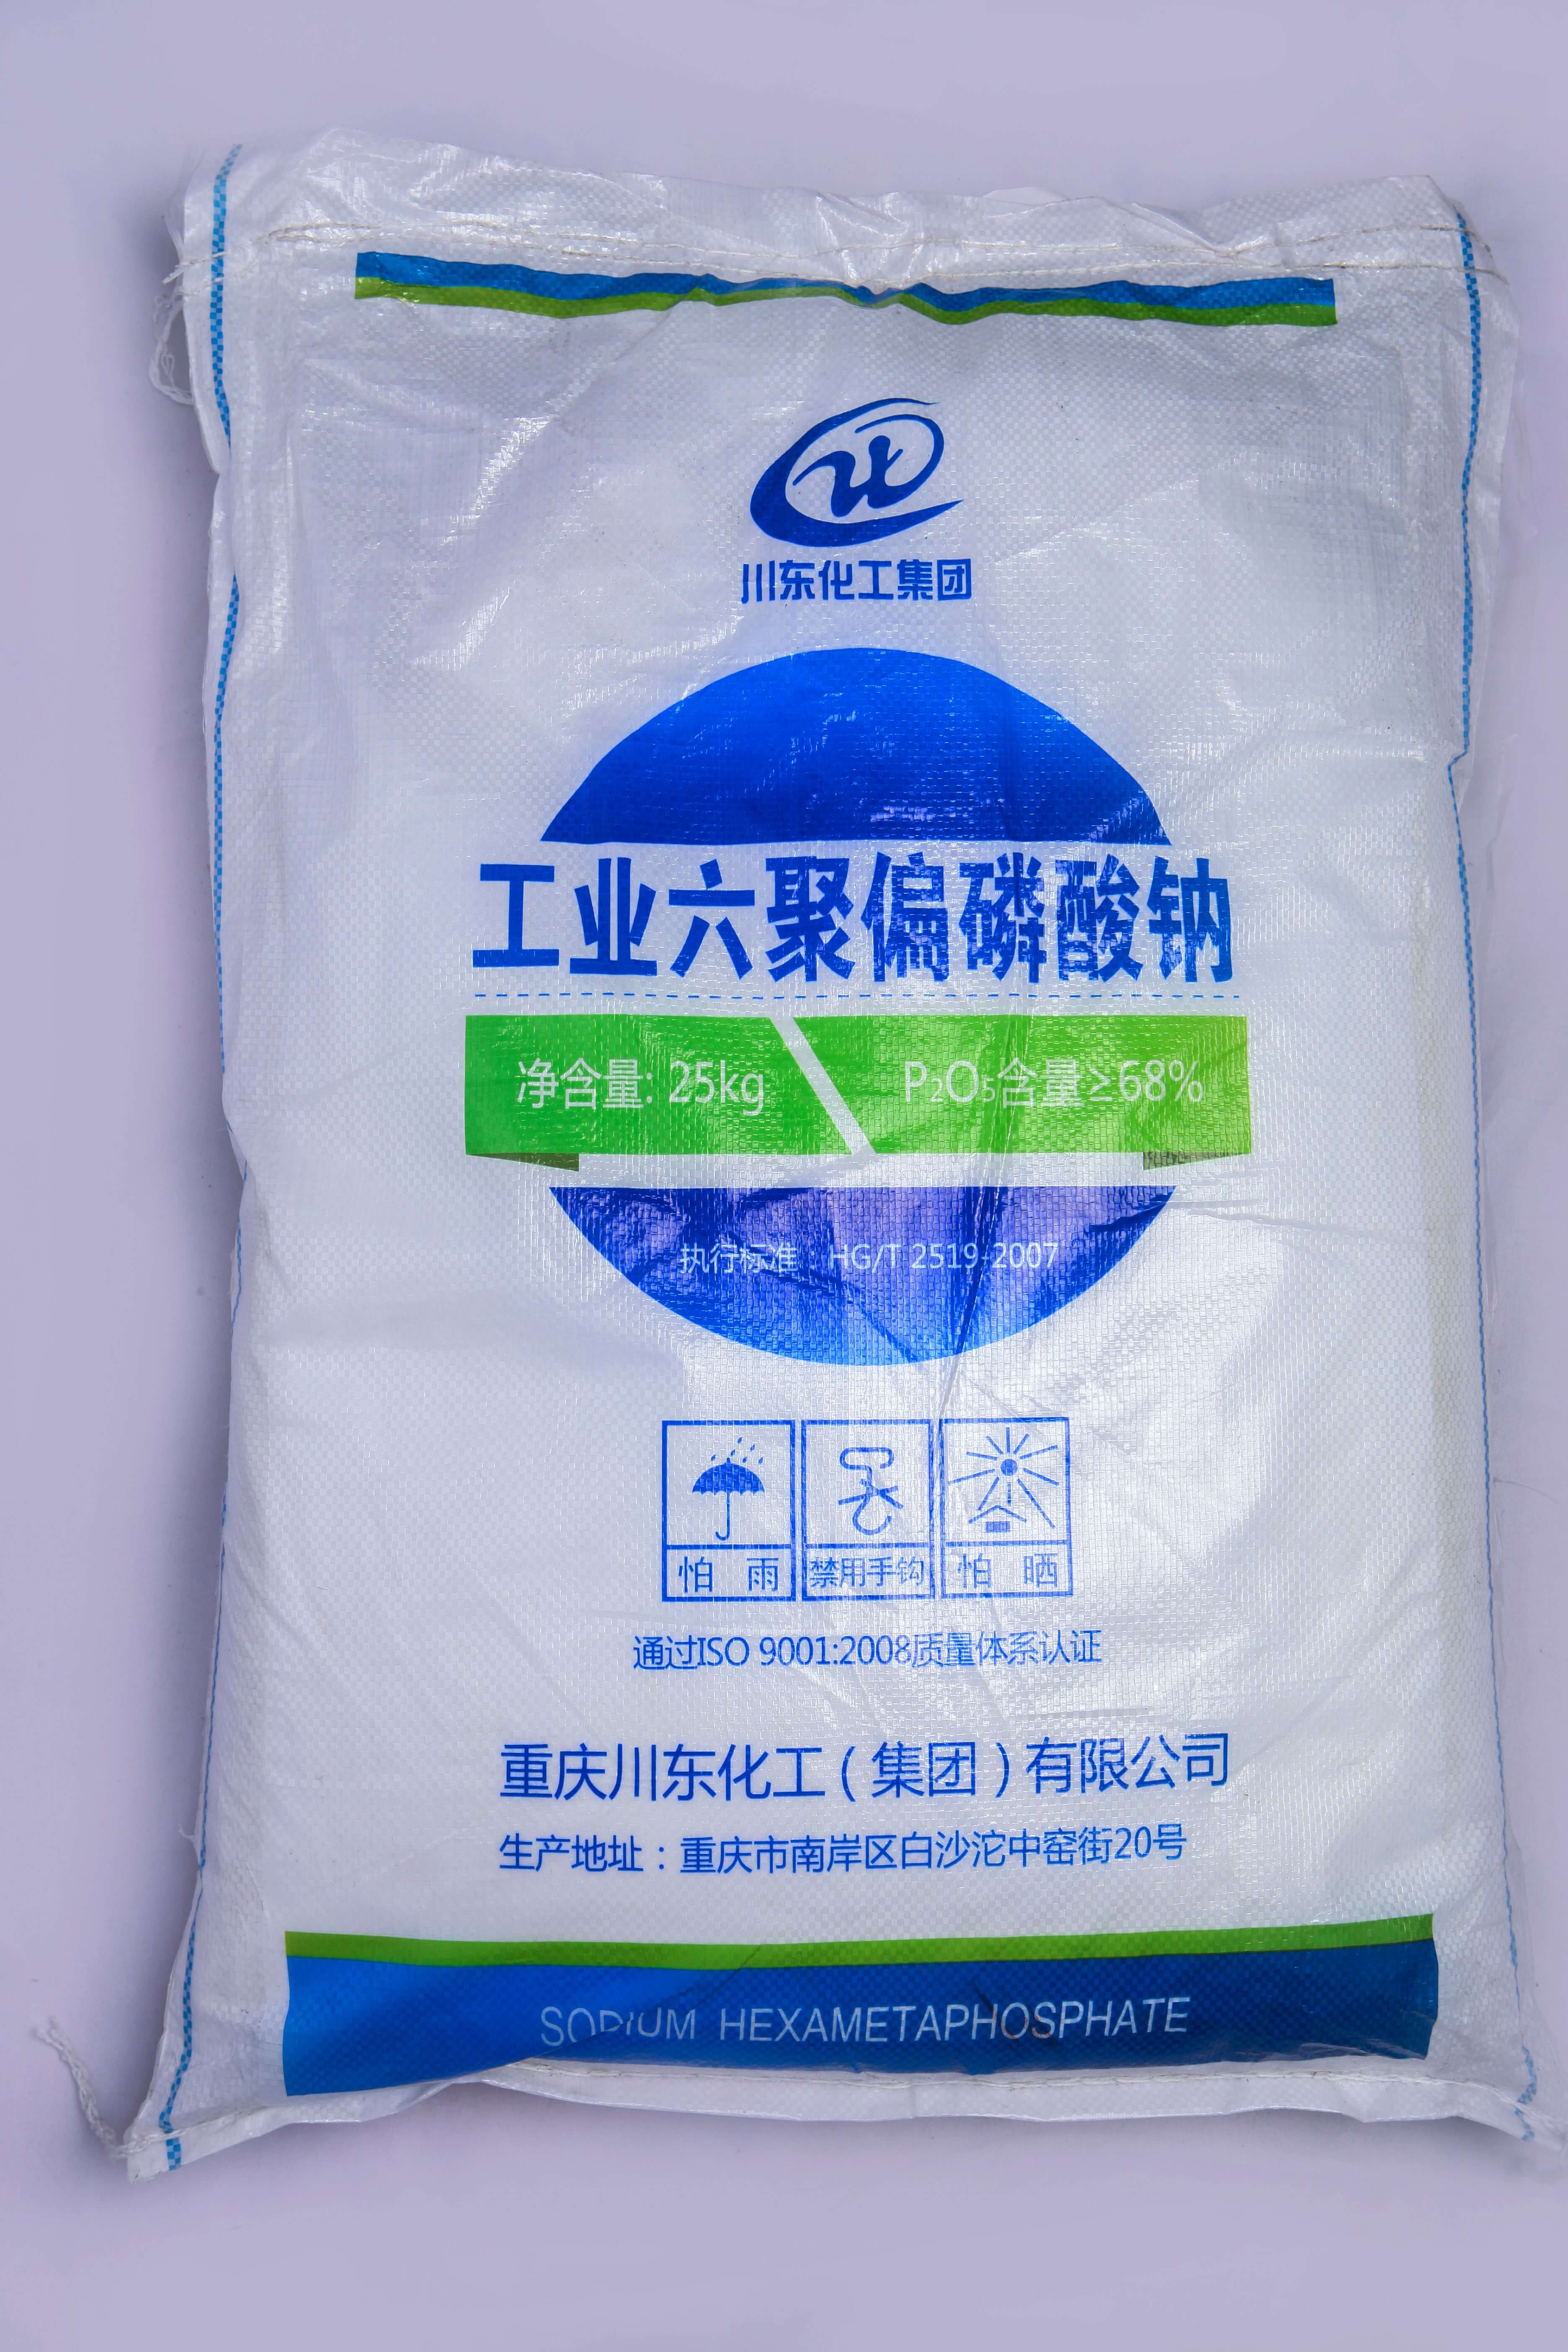 佛山三聚磷酸鈉代理商認為黃磷價格的持續上漲，主要受幾個方面的因素影響